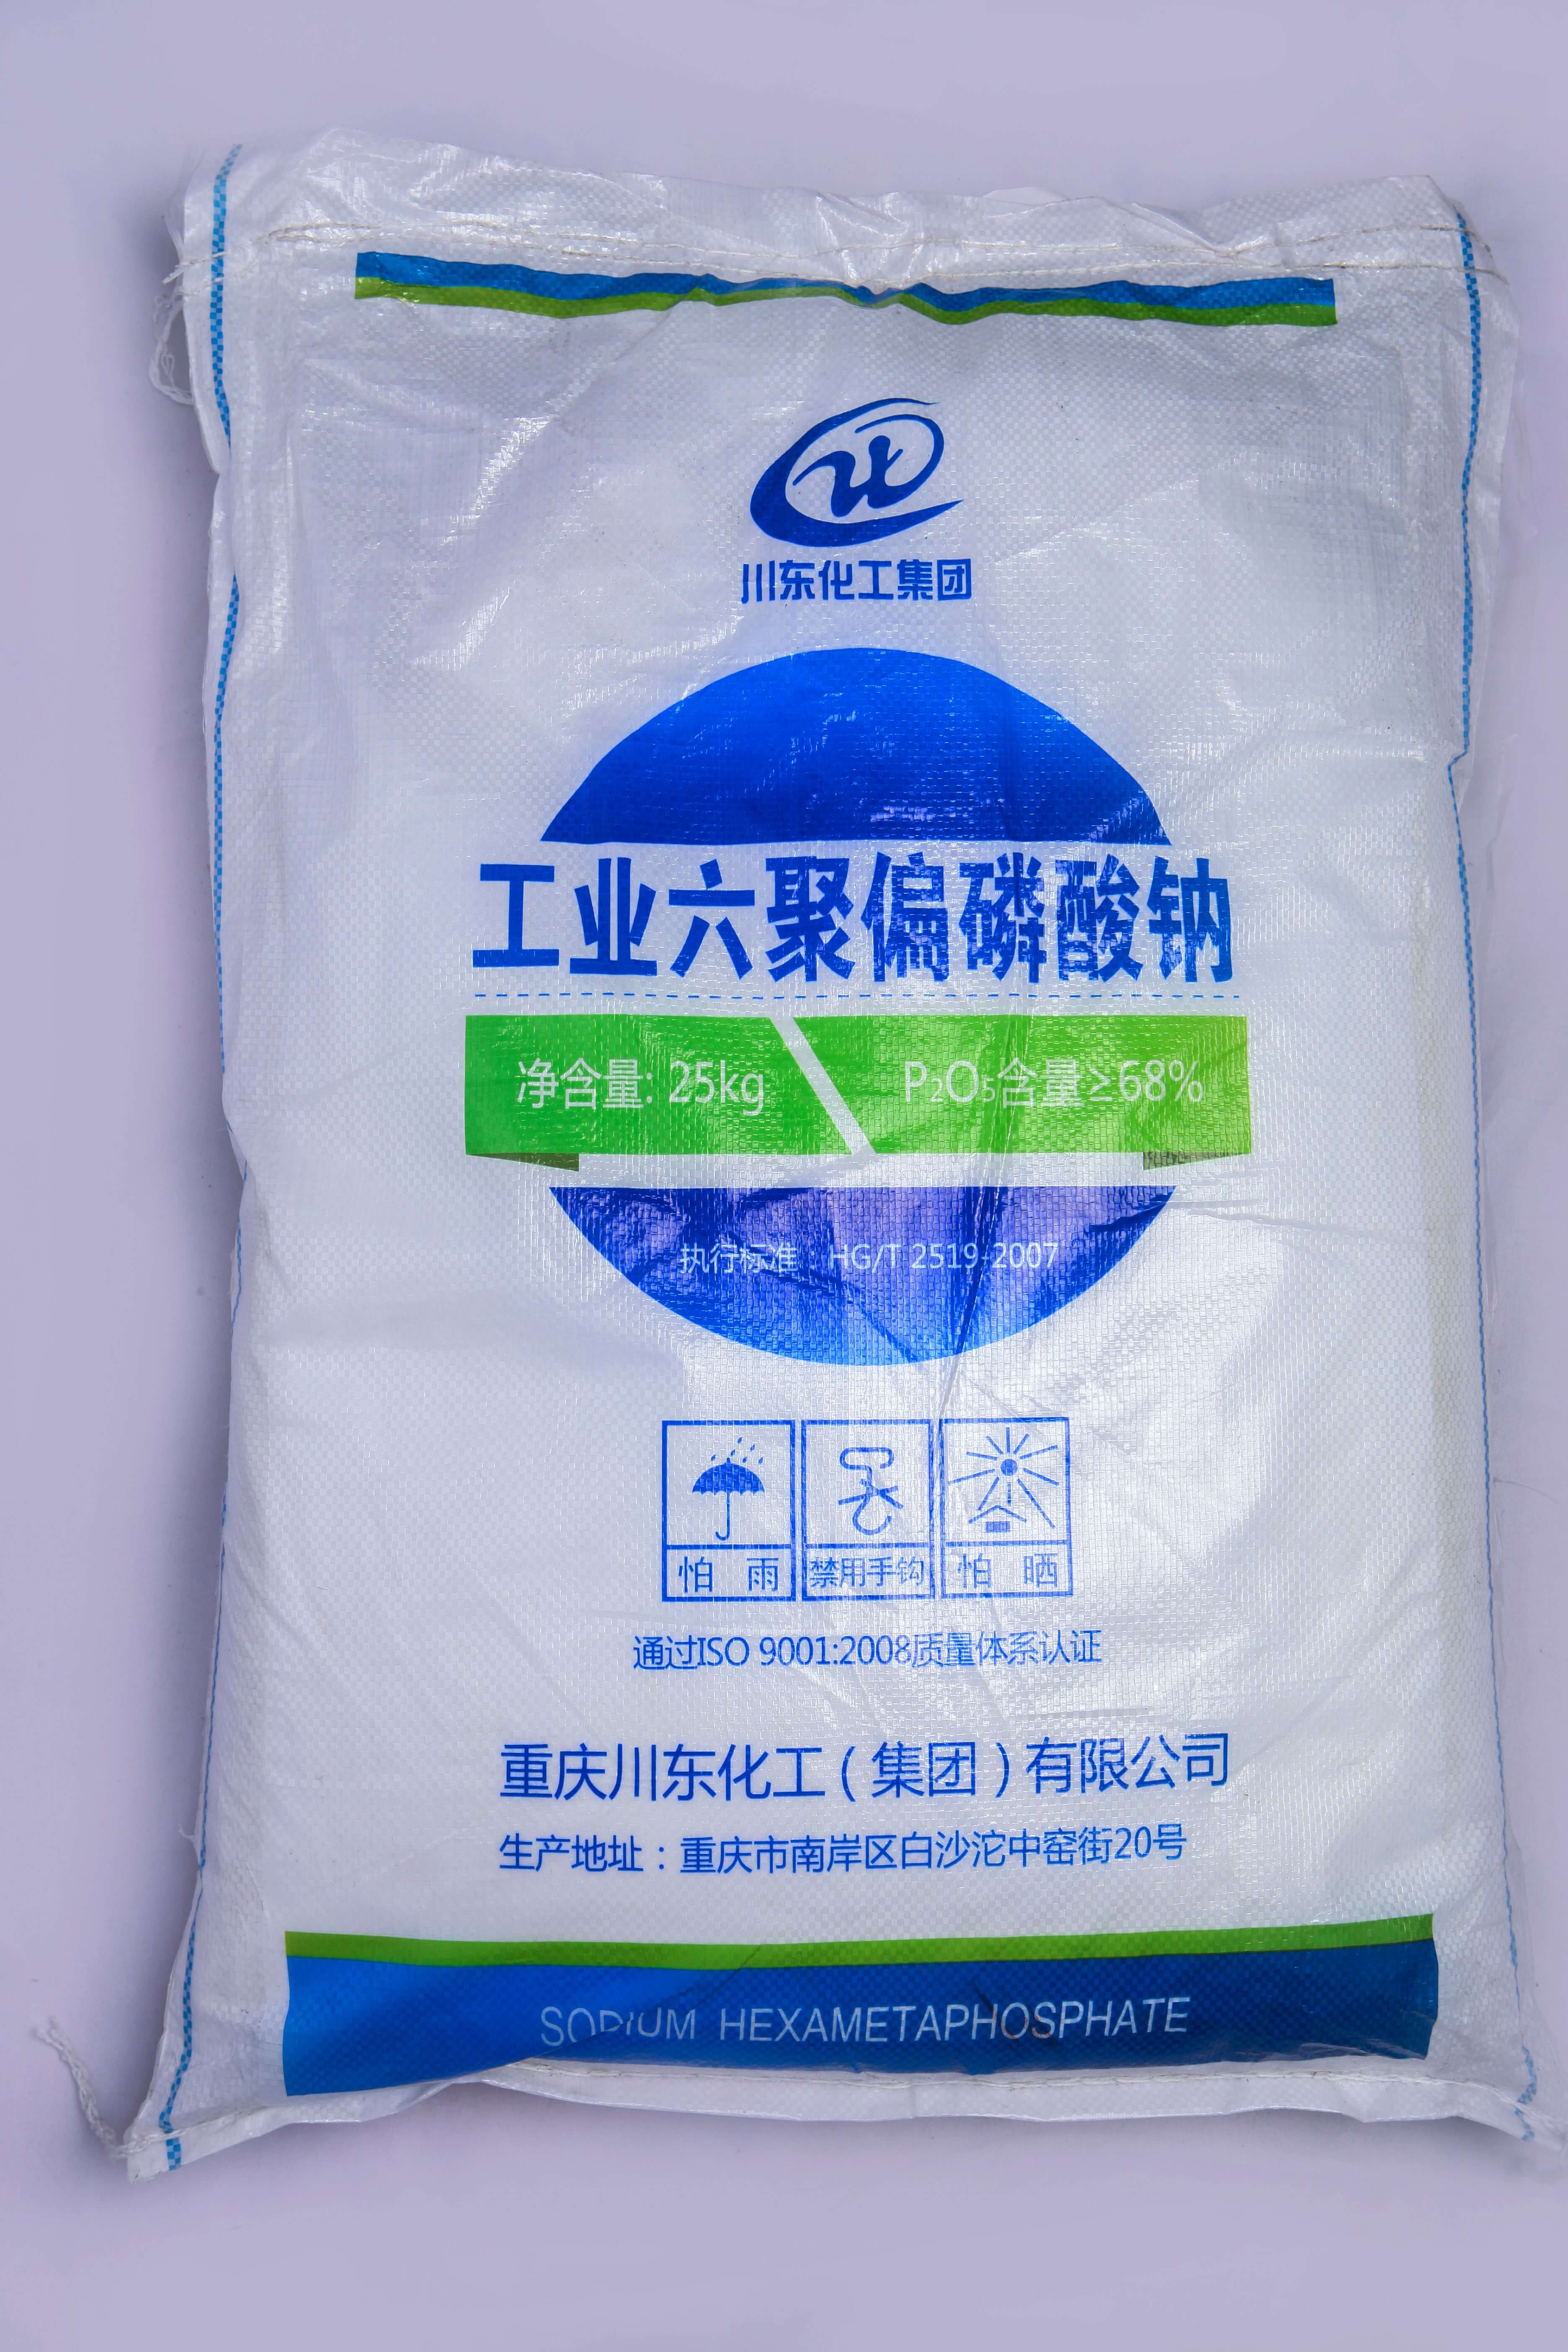 佛山三聚磷酸鈉代理商認為黃磷價格的持續上漲，主要受幾個方面的因素影響